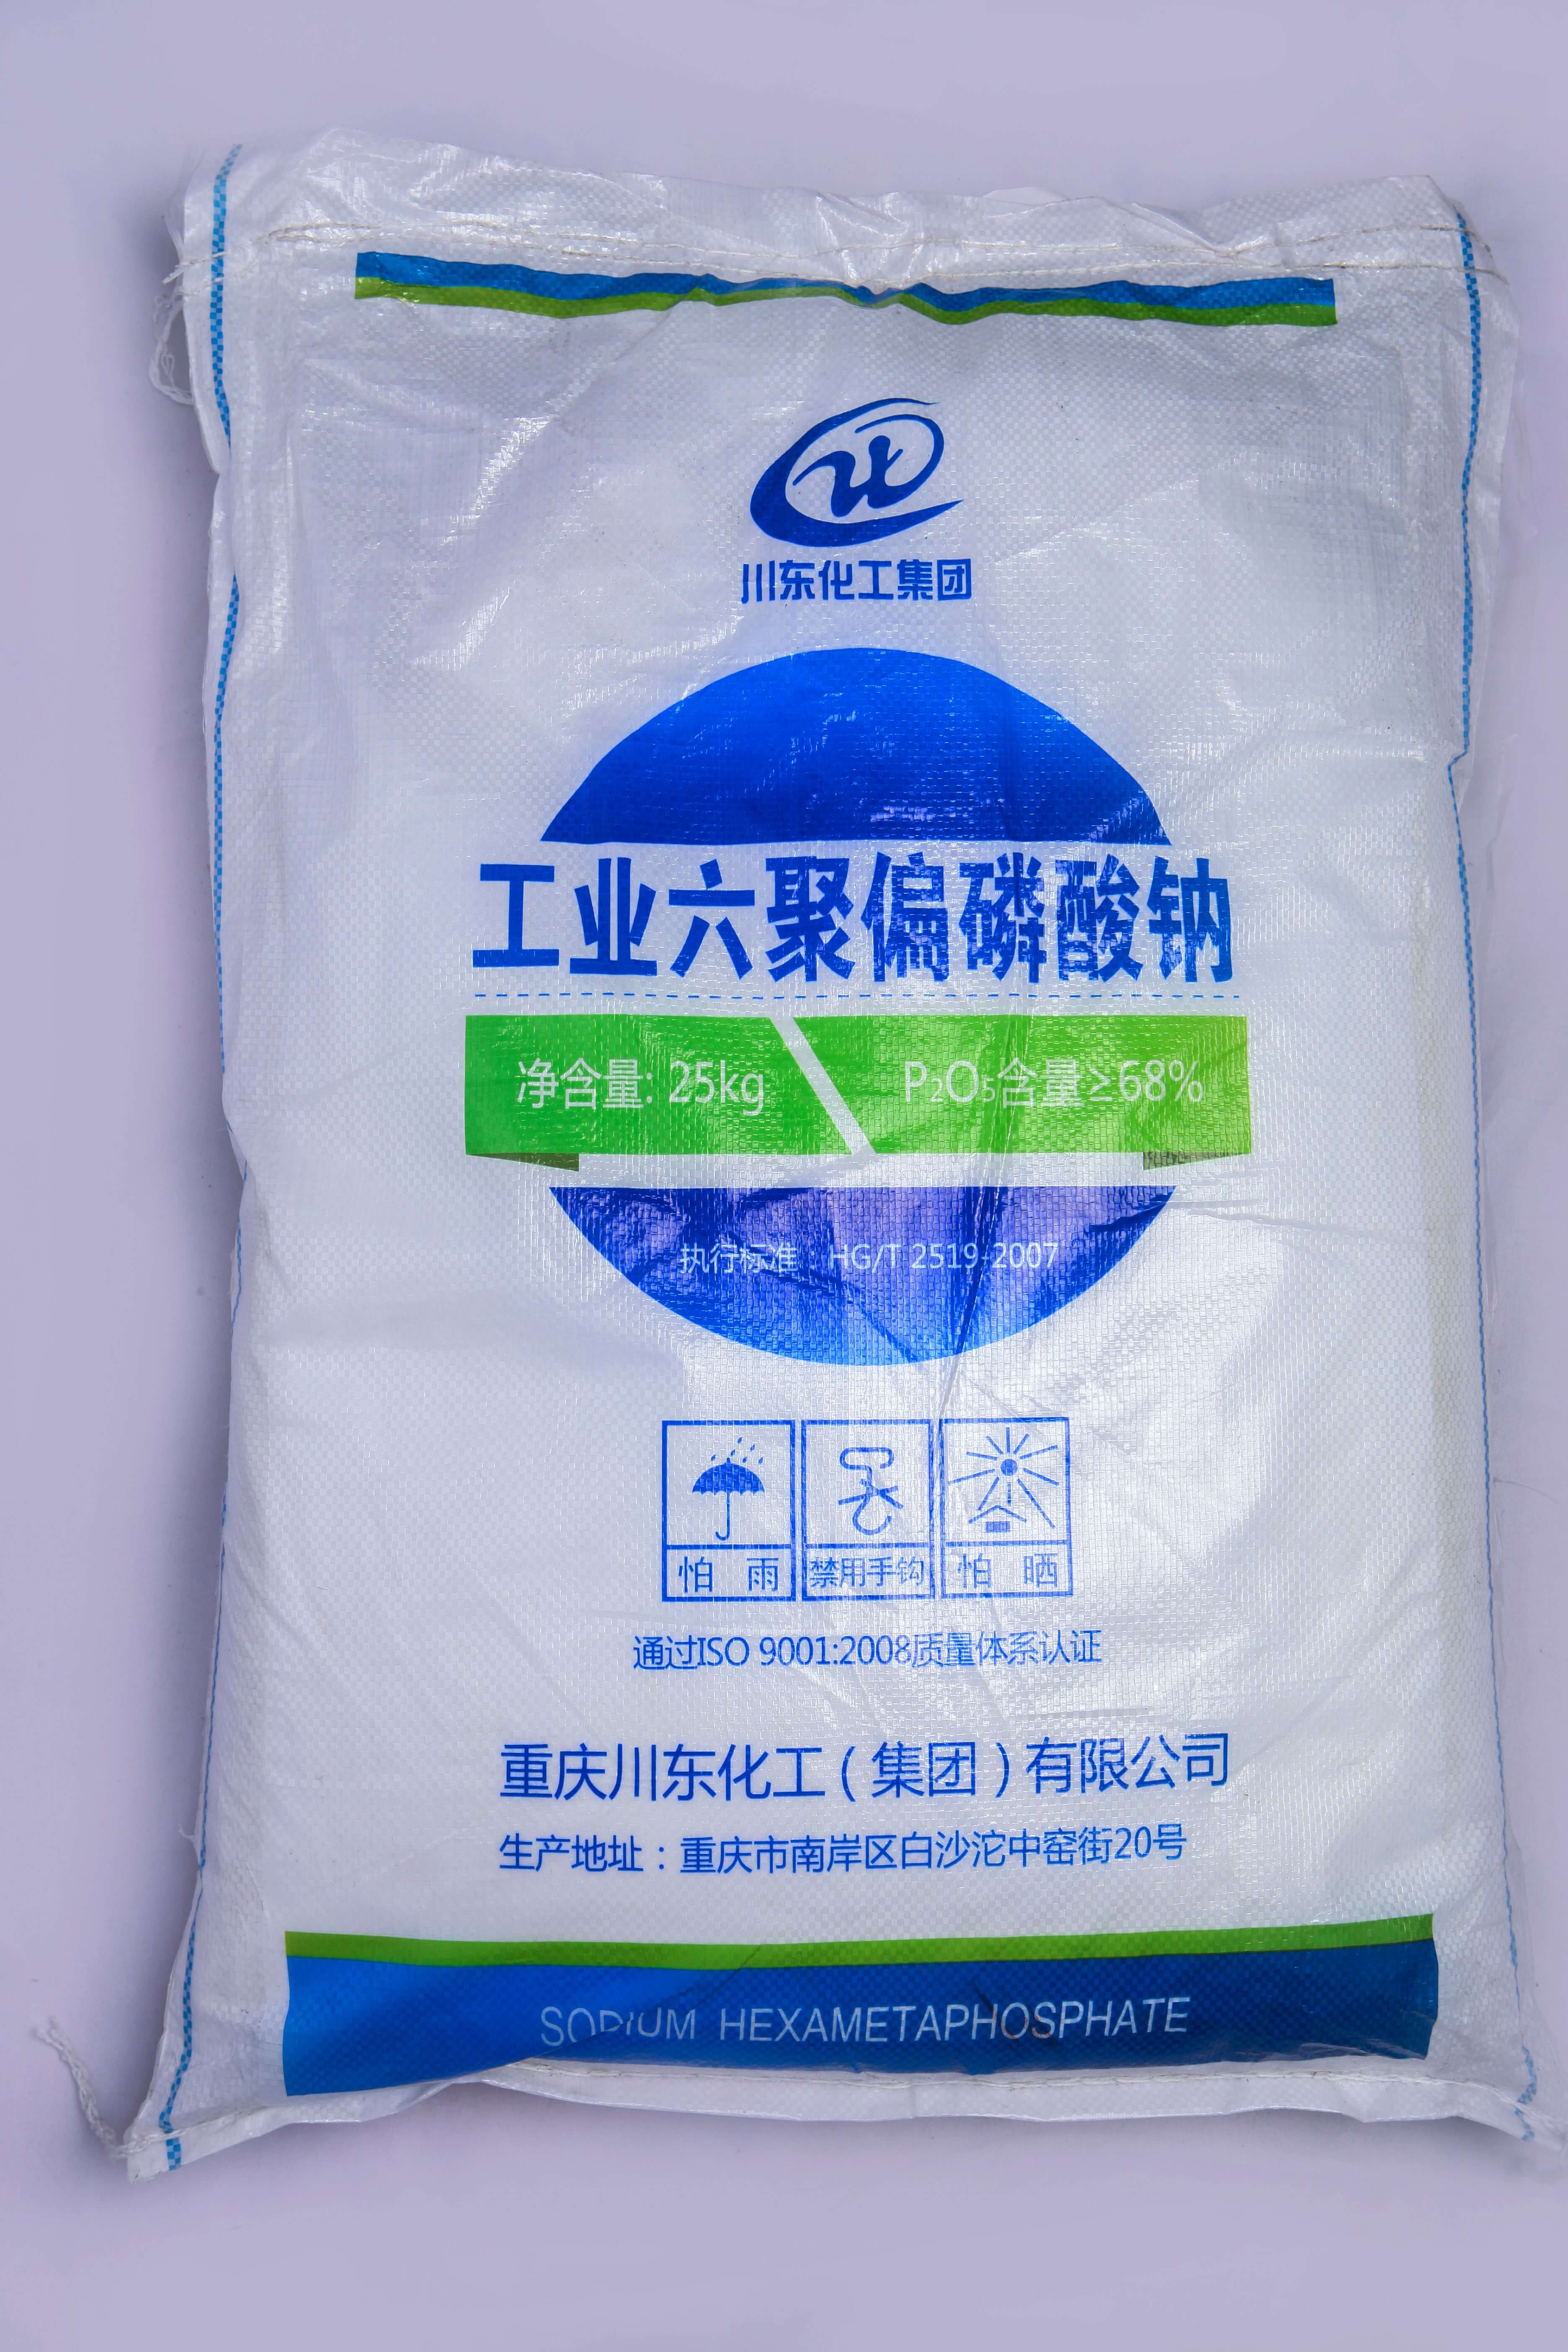 佛山三聚磷酸鈉代理商認為黃磷價格的持續上漲，主要受幾個方面的因素影響